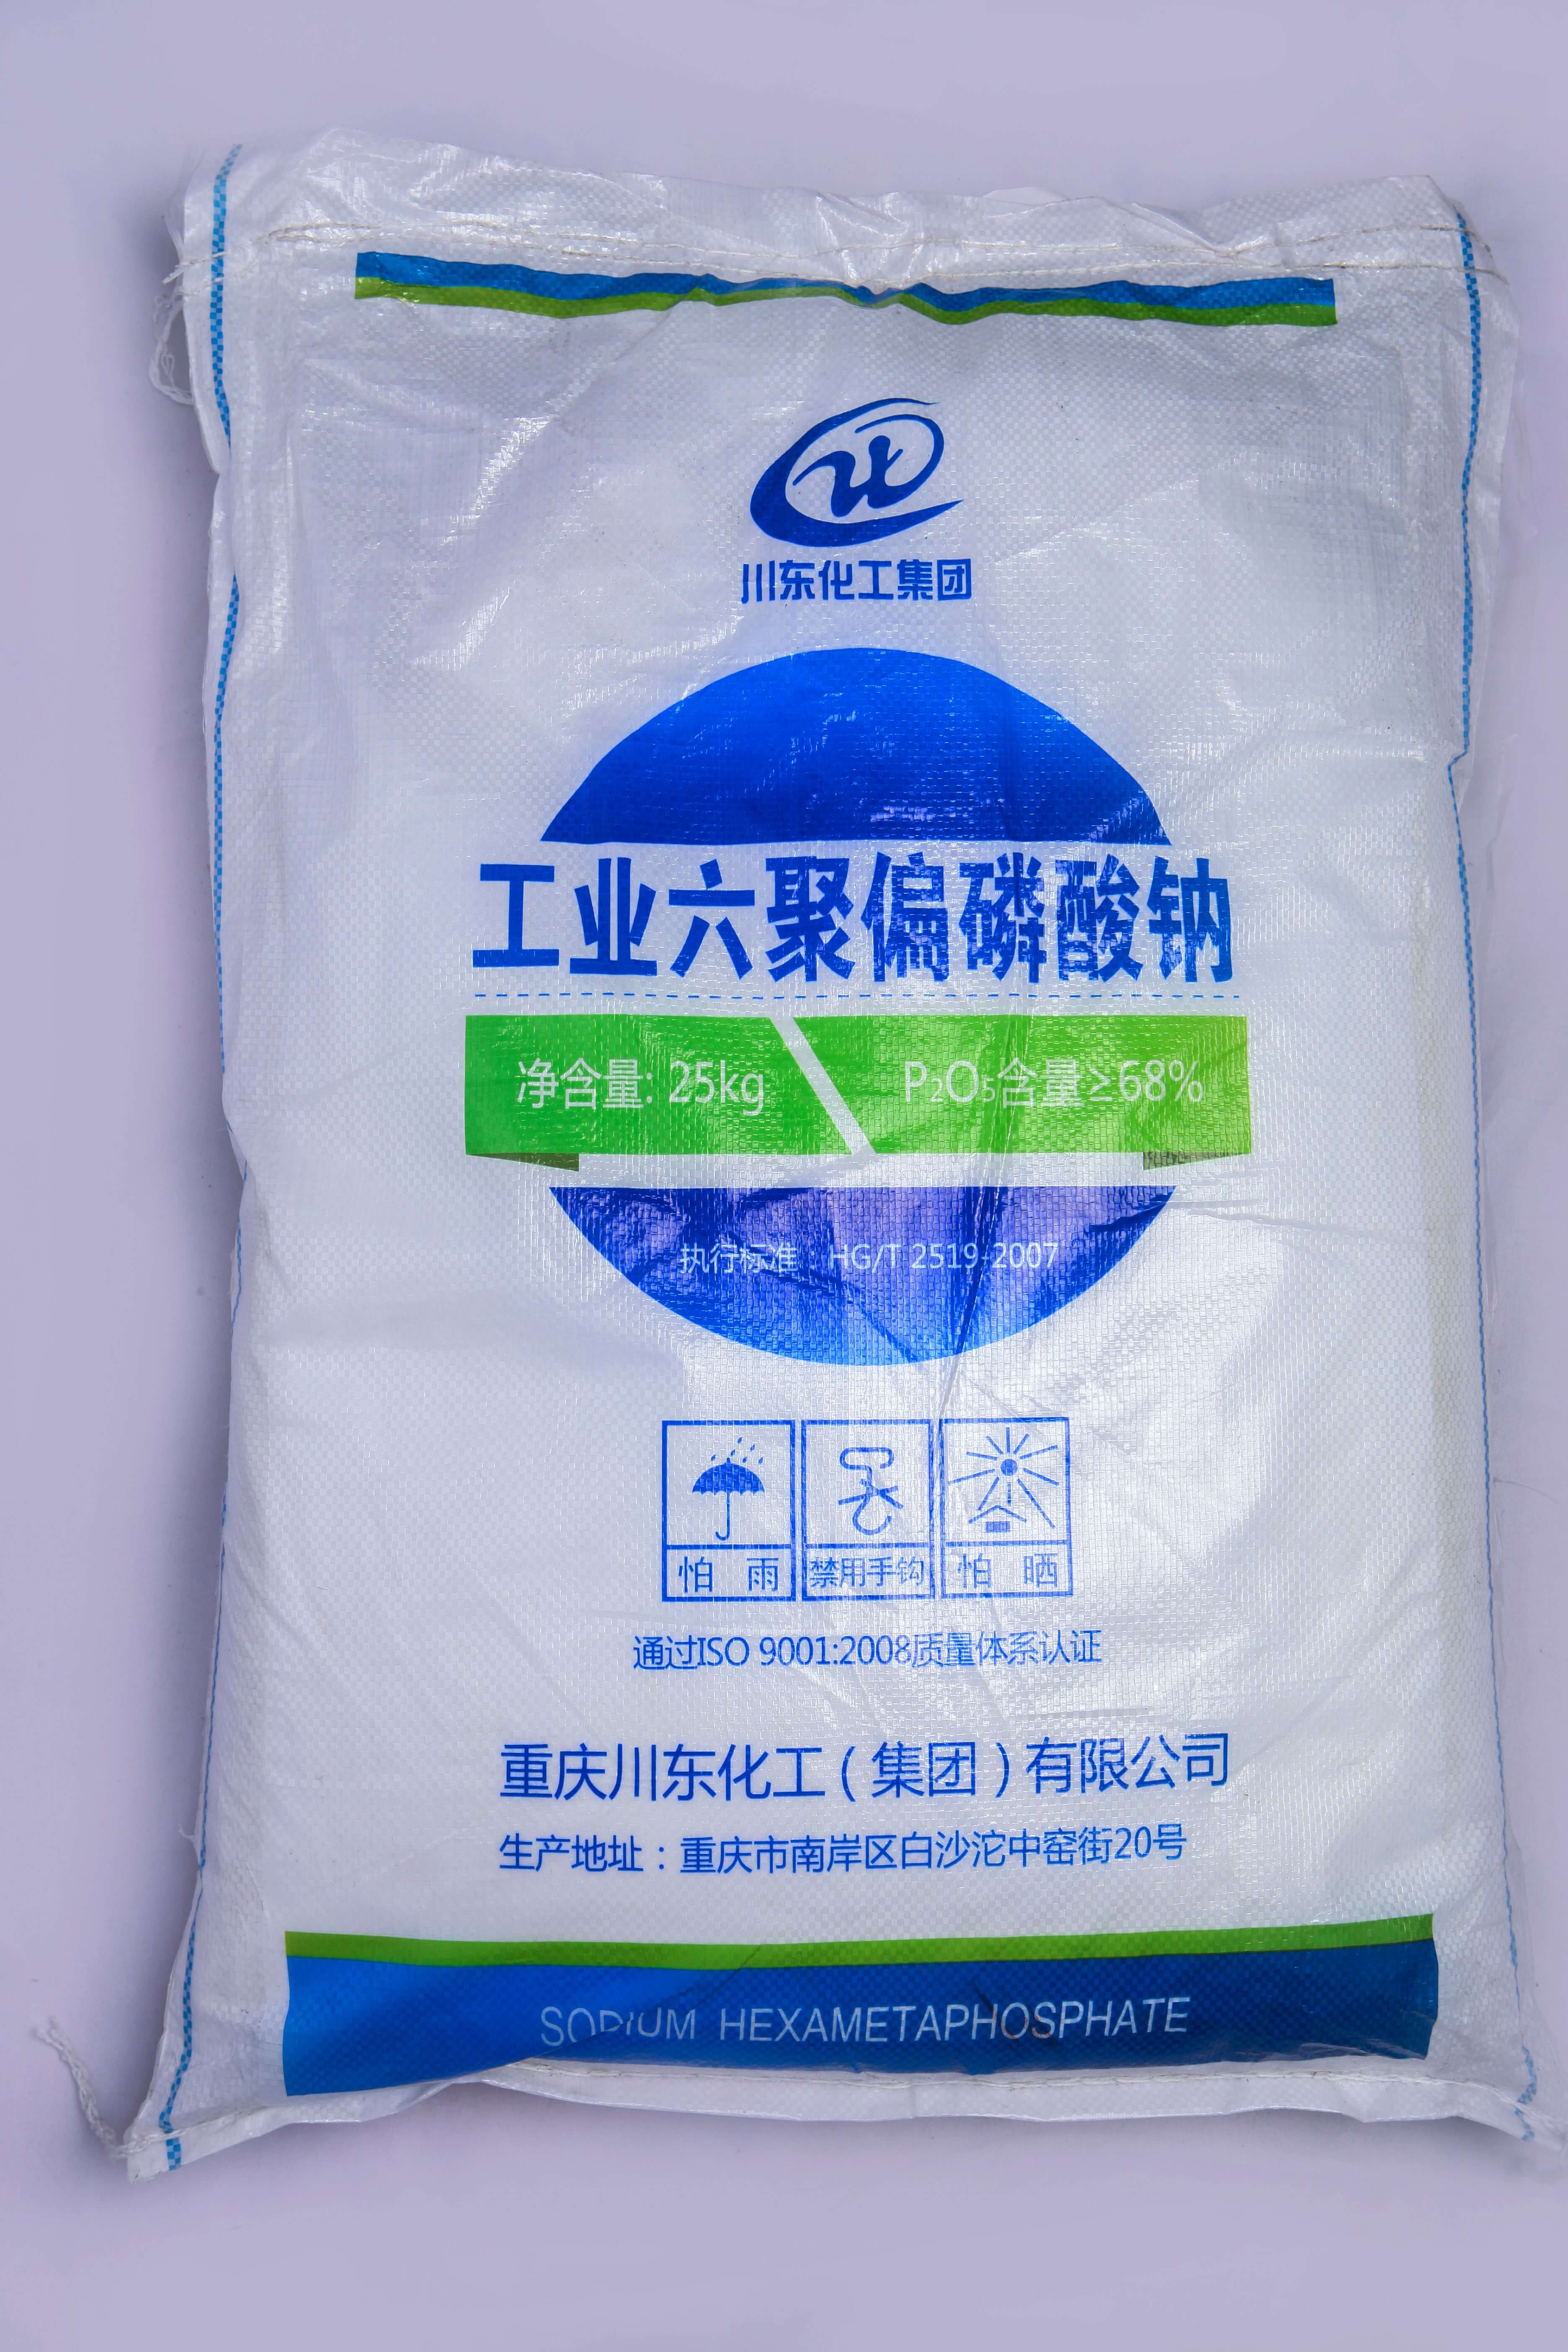 佛山三聚磷酸鈉代理商認為黃磷價格的持續上漲，主要受幾個方面的因素影響